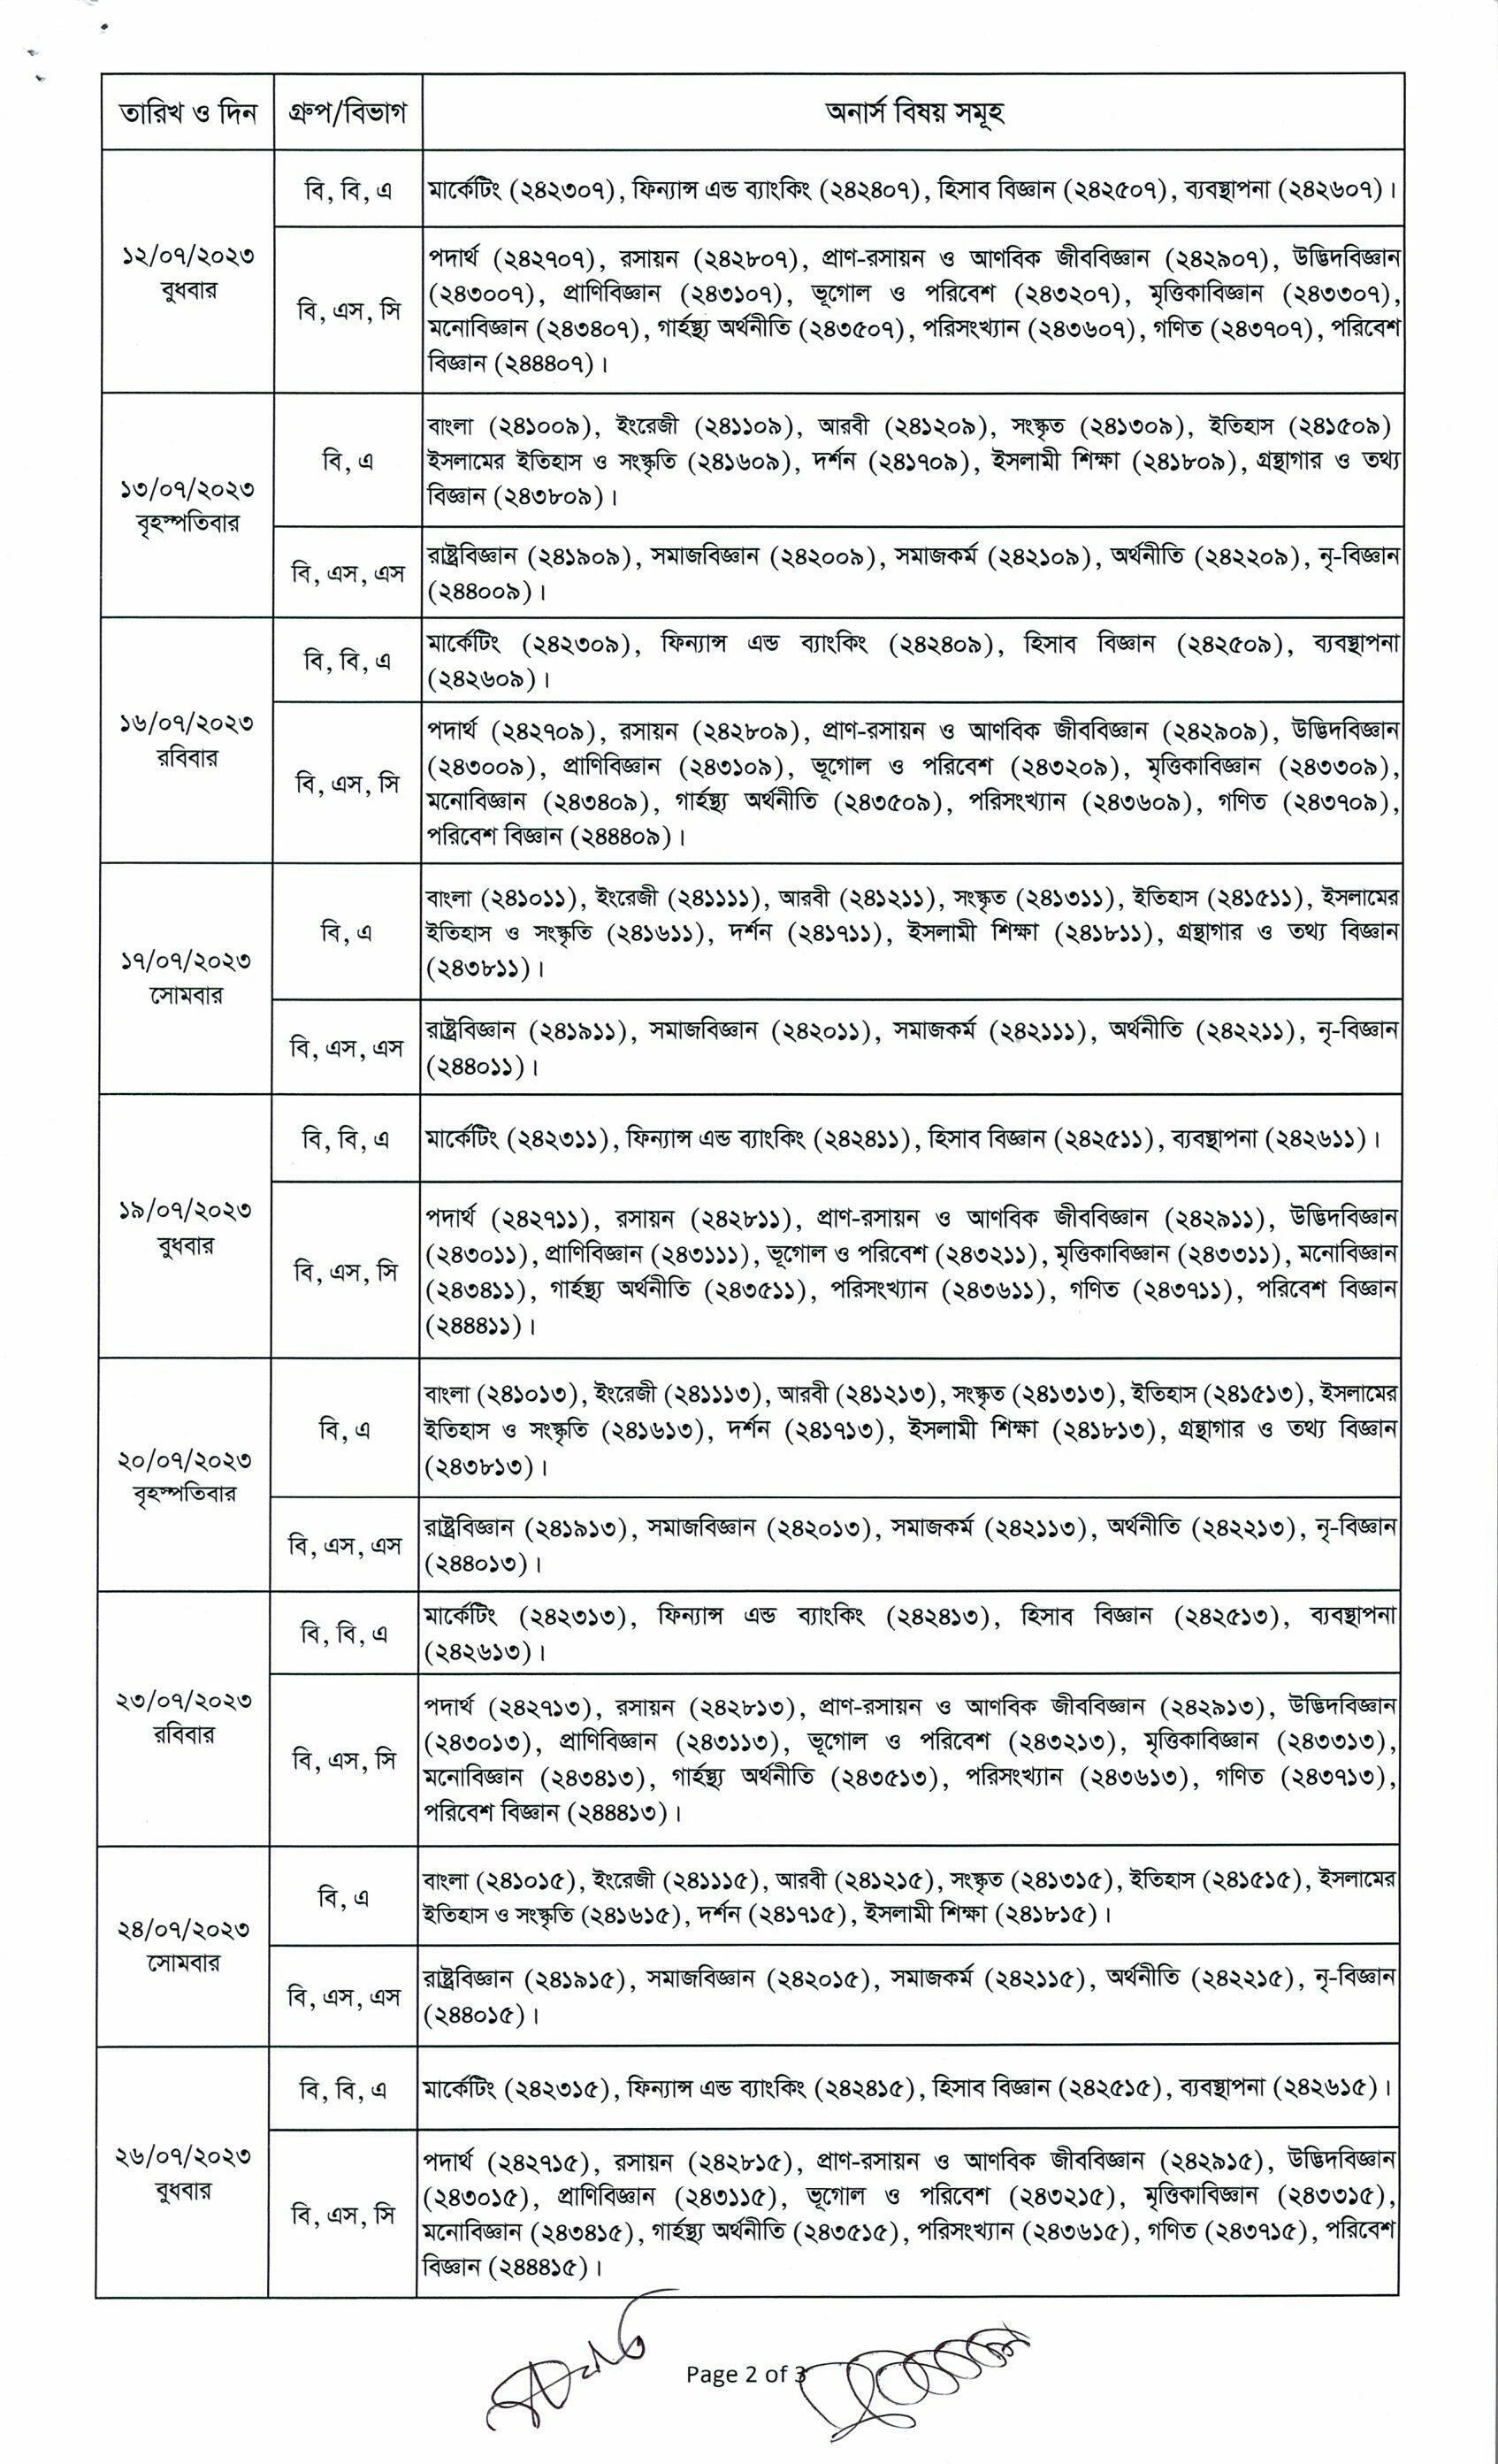 ২০২১ সালের অনার্স ৪র্থ বর্ষ পরীক্ষার রুটিন সময়সূচী পিডিএফ (পরীক্ষা ২০২৩) - 2021 Honours 4th Year Examination Routine (Exam 2023)